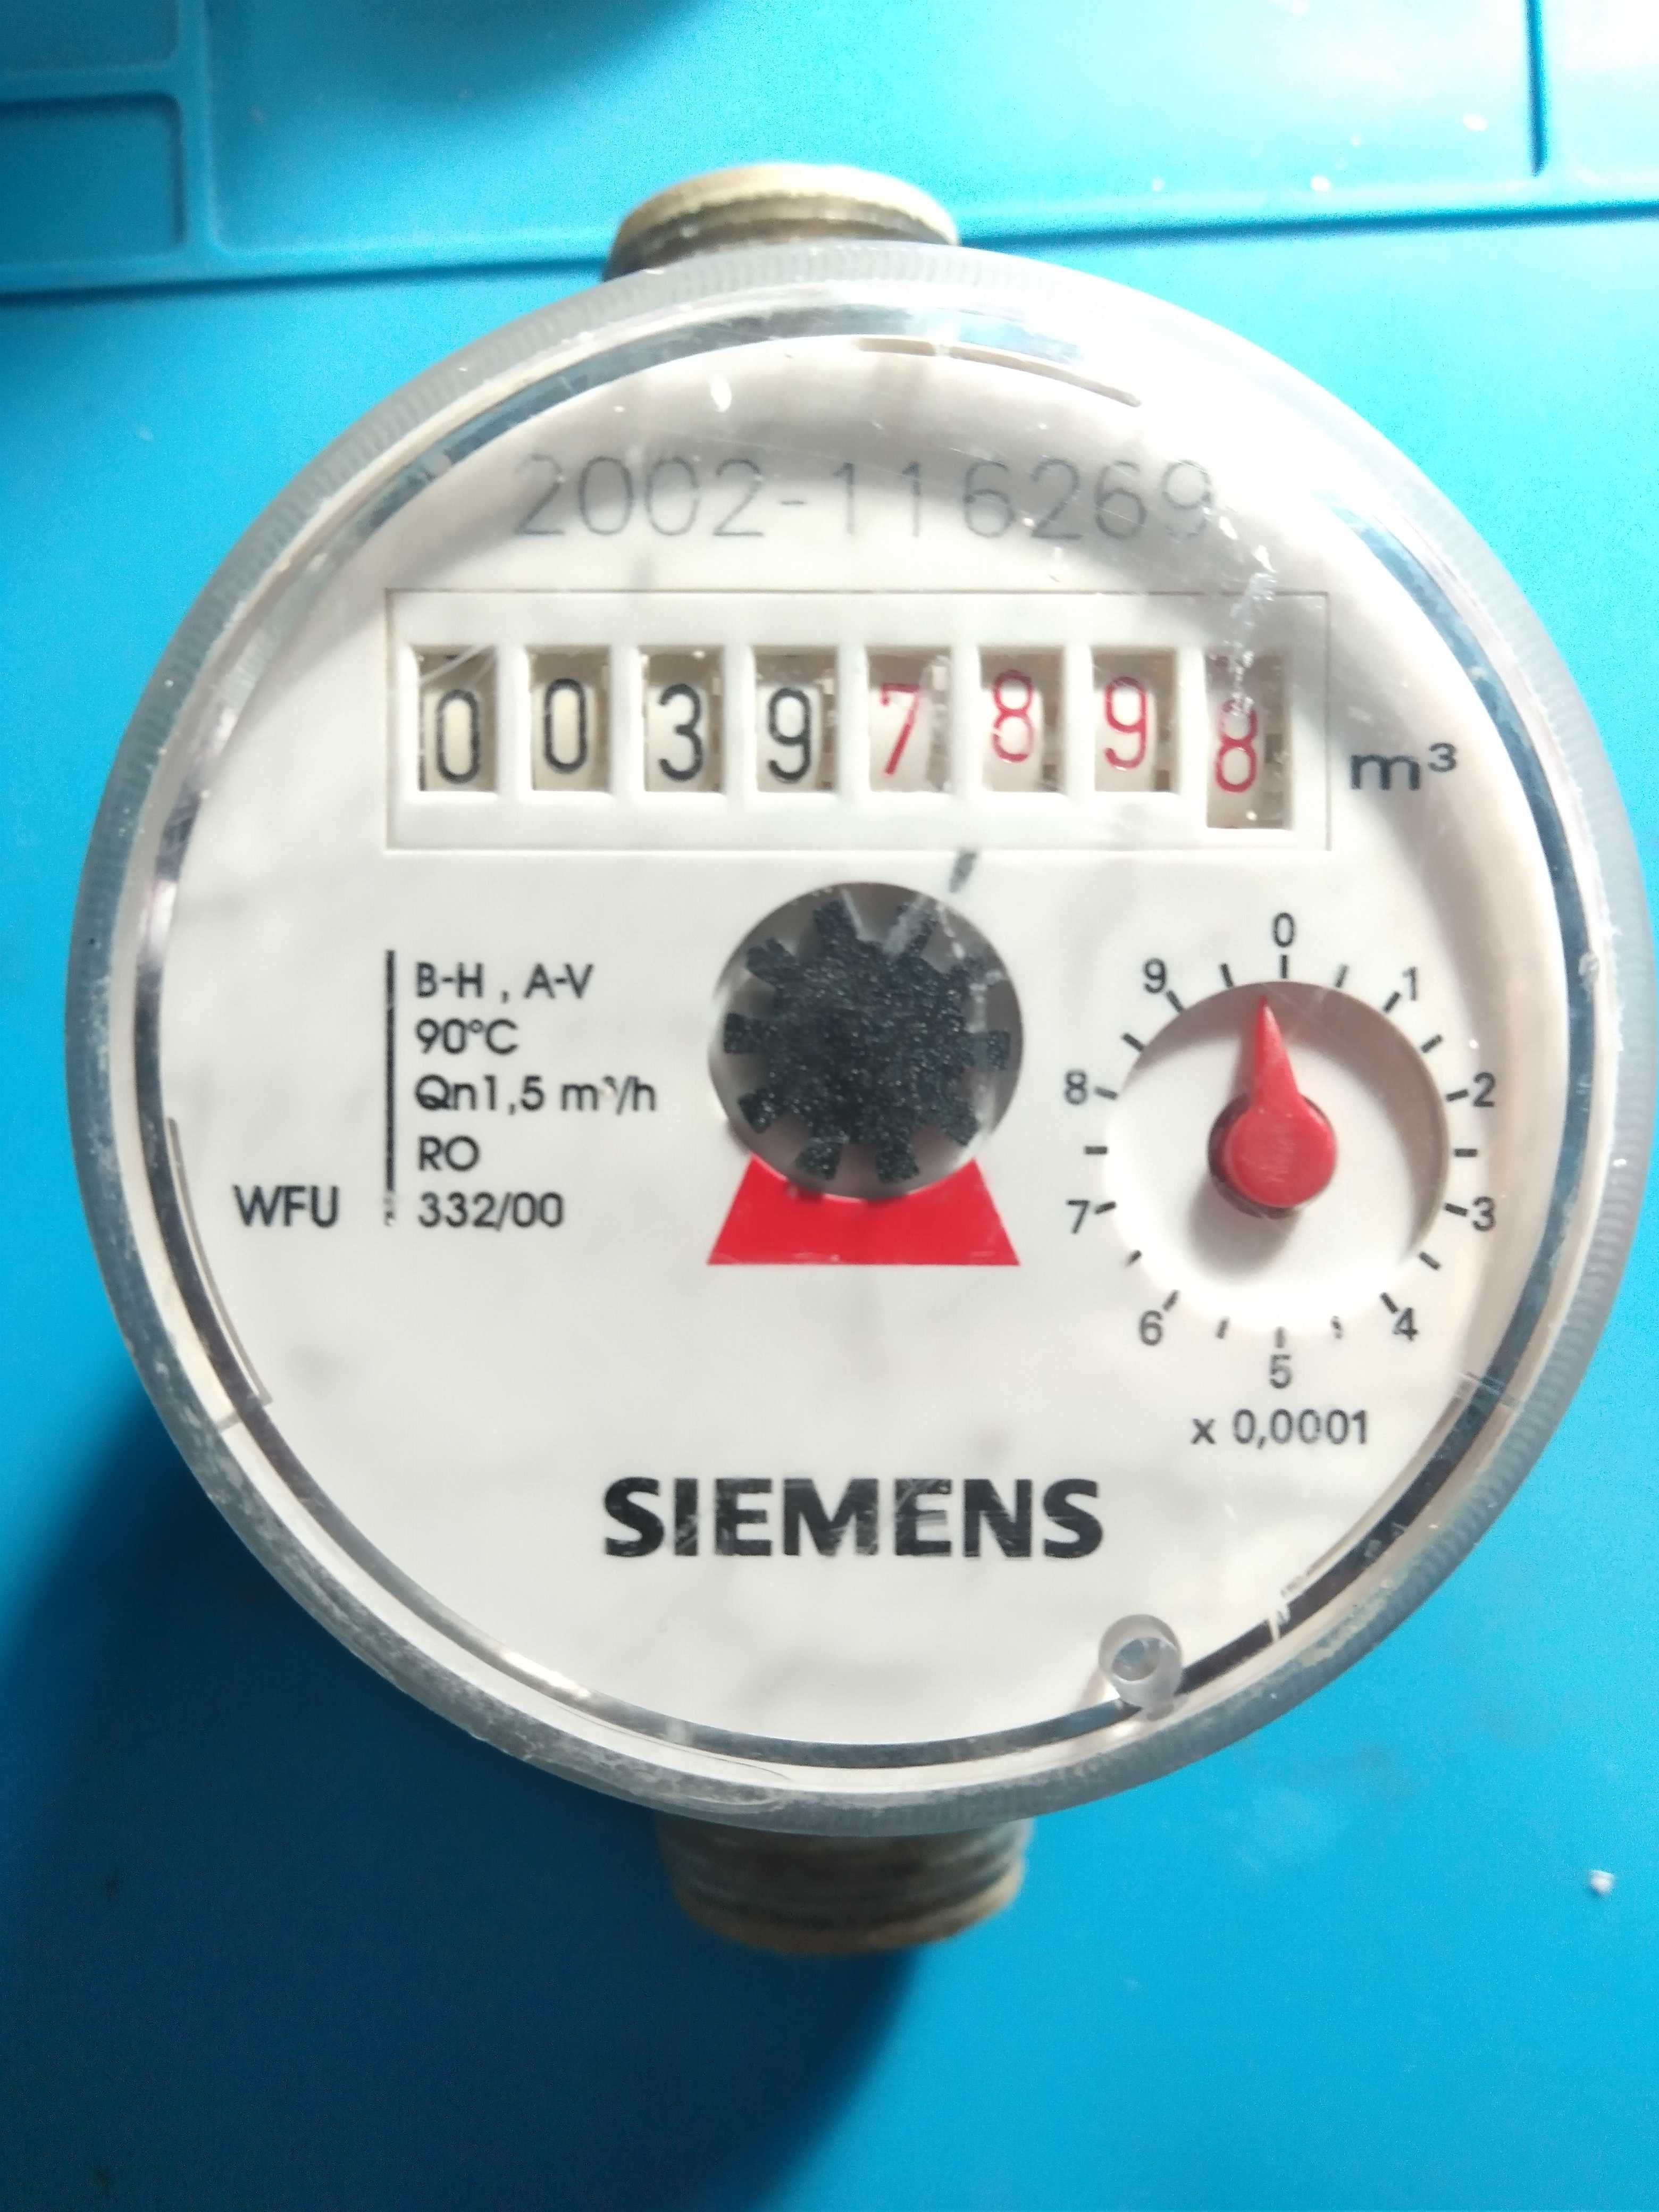 Apometru Siemens